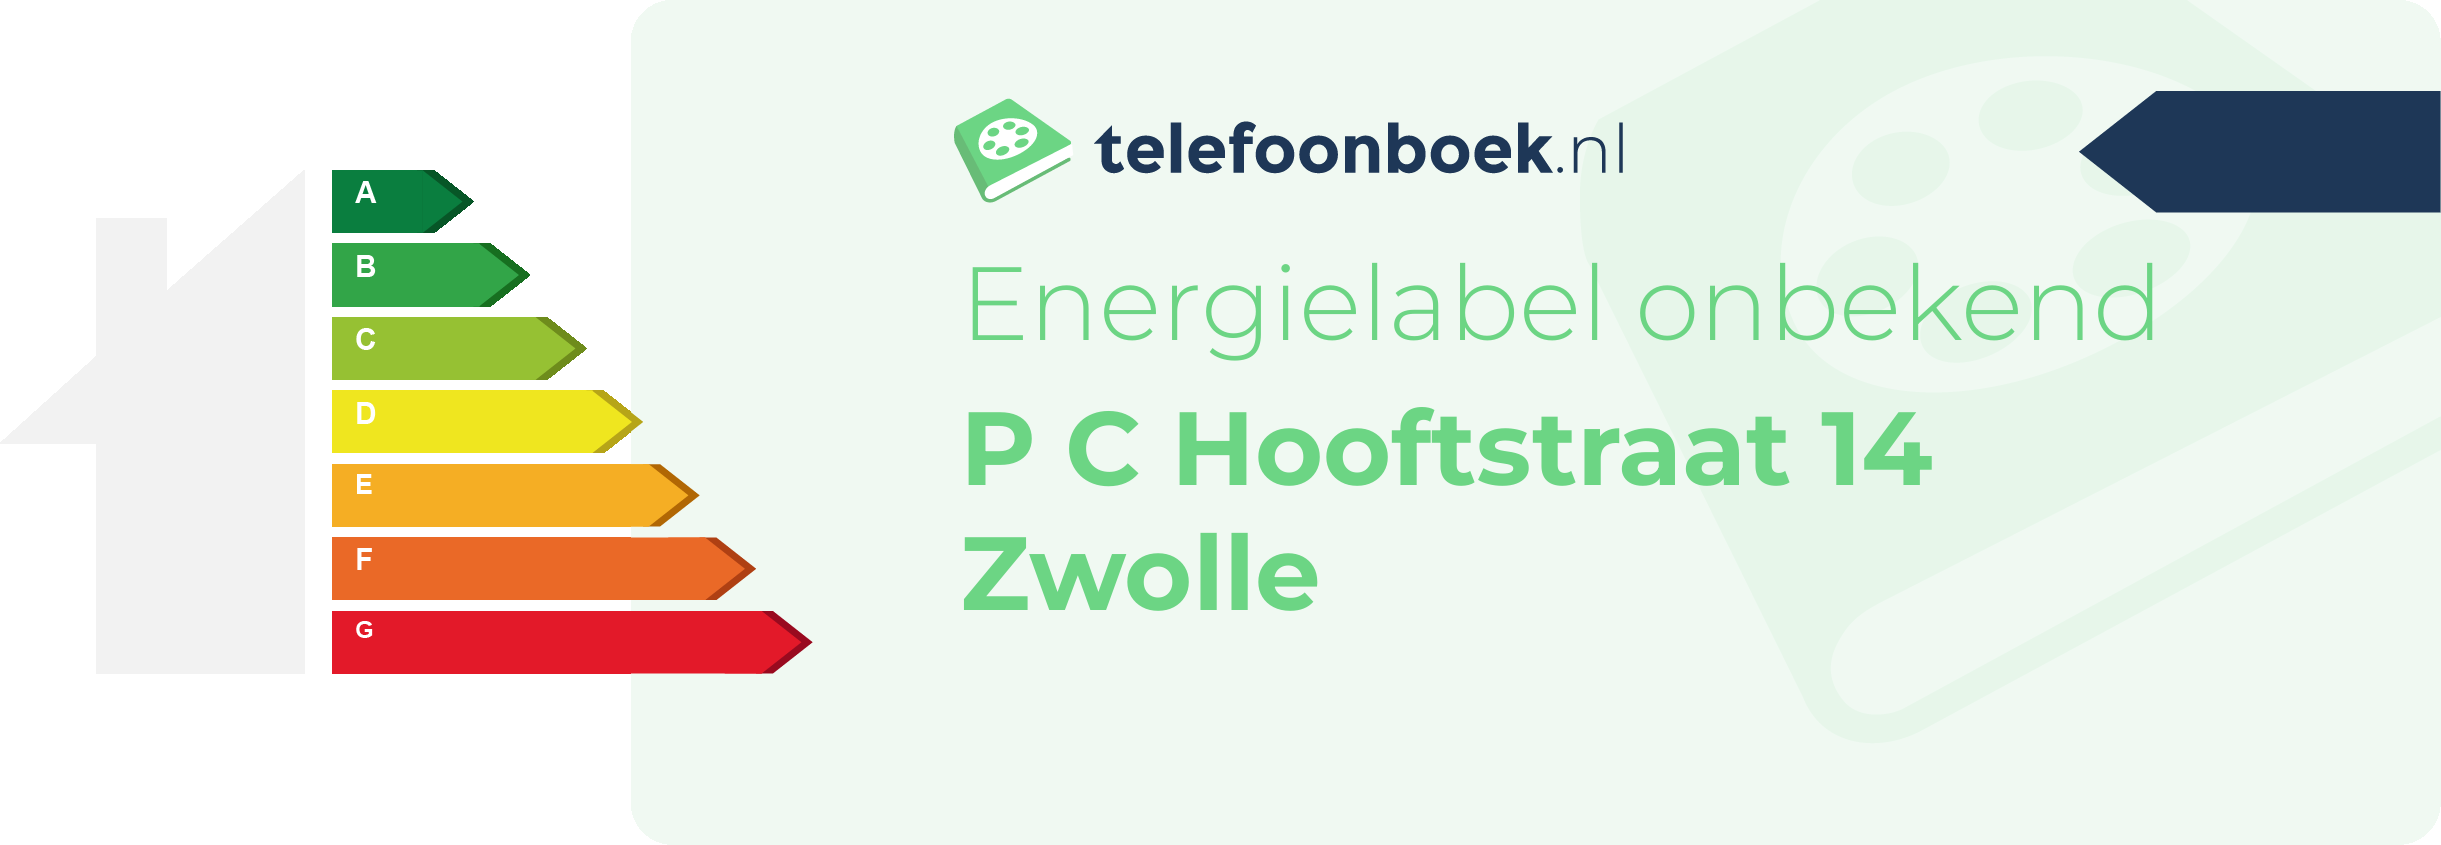 Energielabel P C Hooftstraat 14 Zwolle